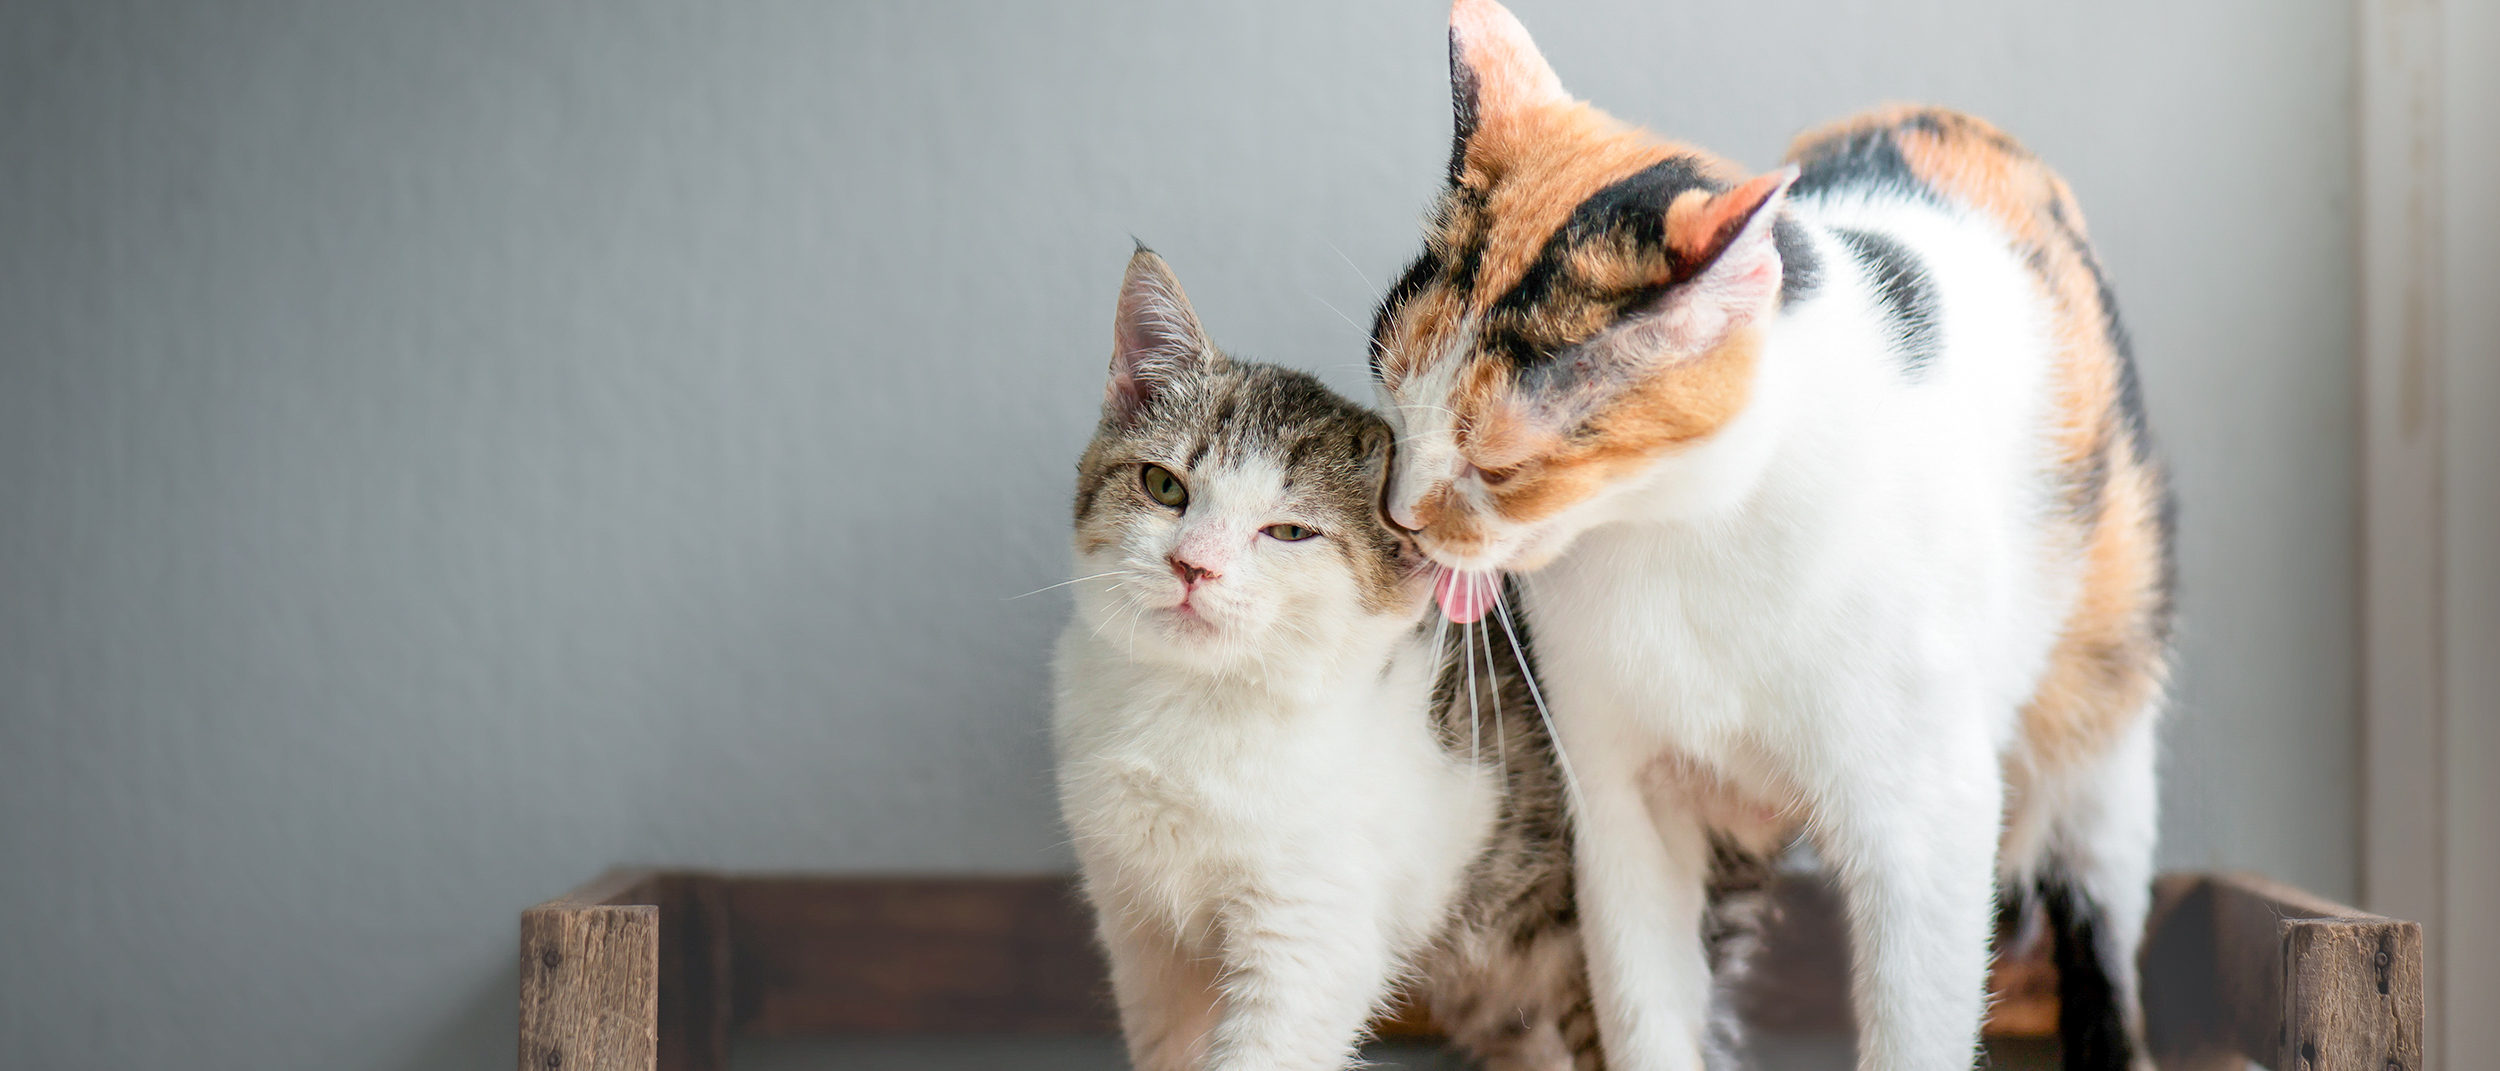 Gato adulto parado junto a un gatito que le lame la oreja.